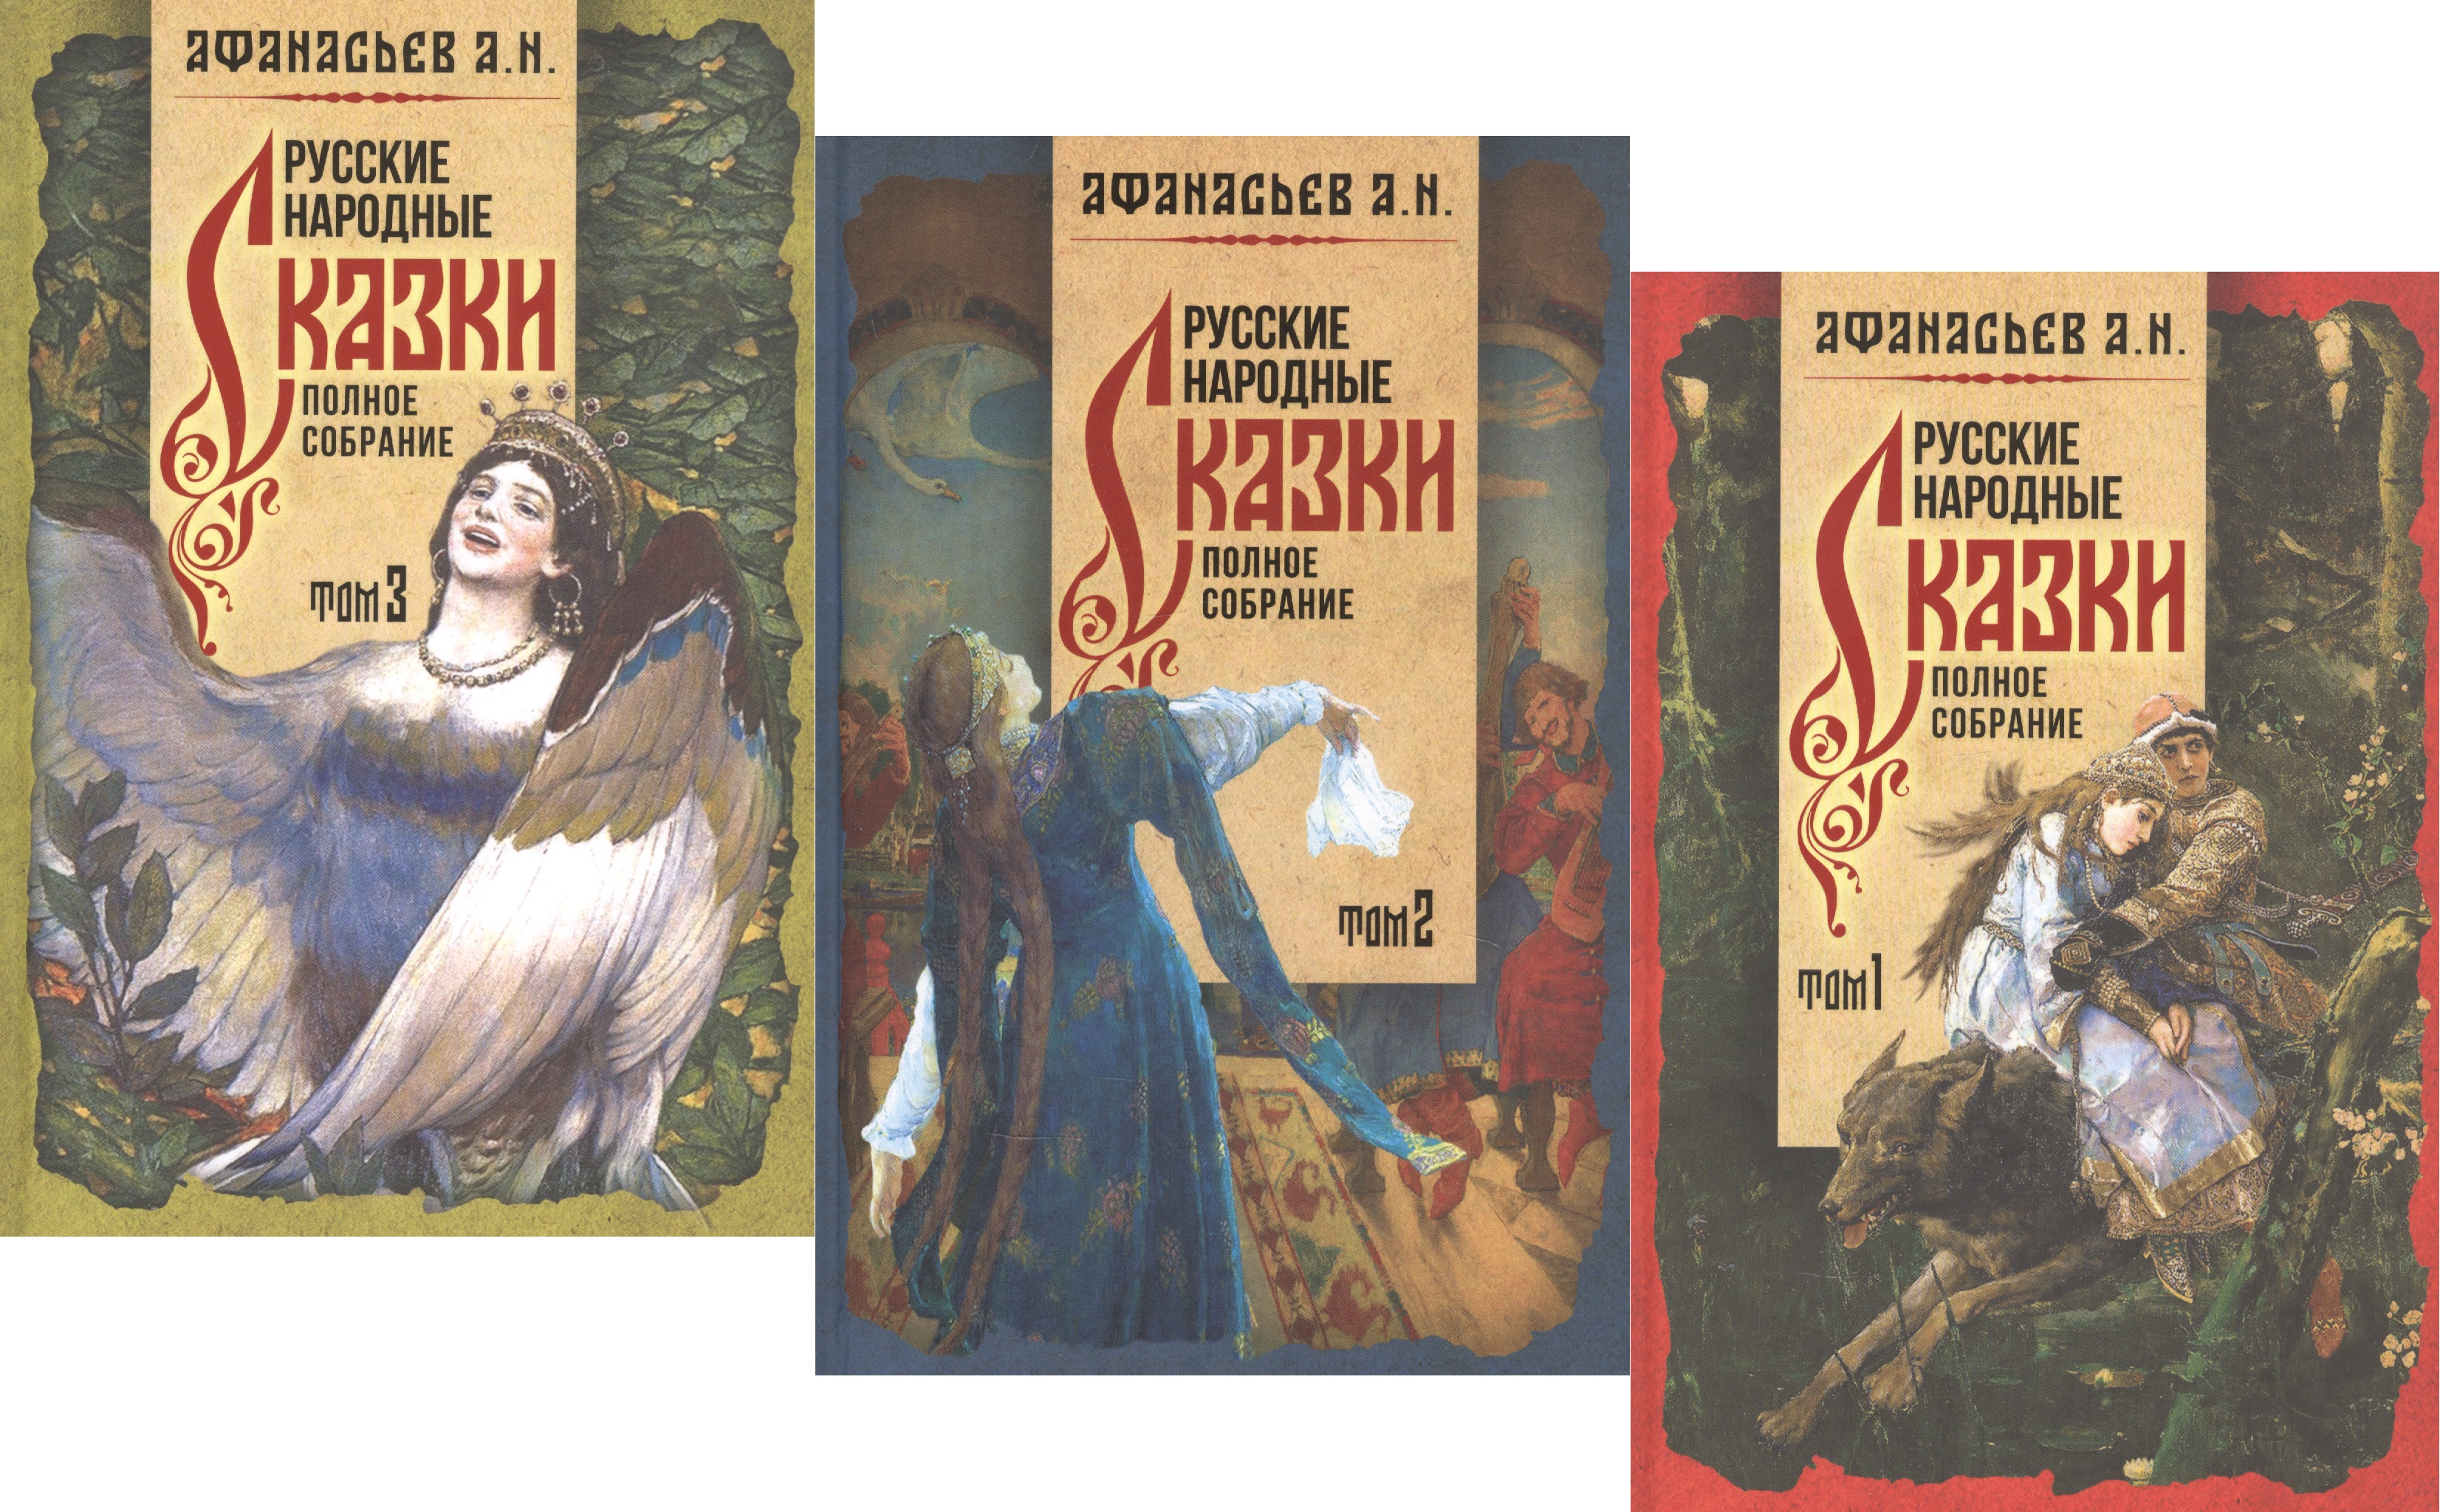 Афанасьев Александр Николаевич - Русские народные сказки. Полное собрание в трех томах (комплект из 3 книг)